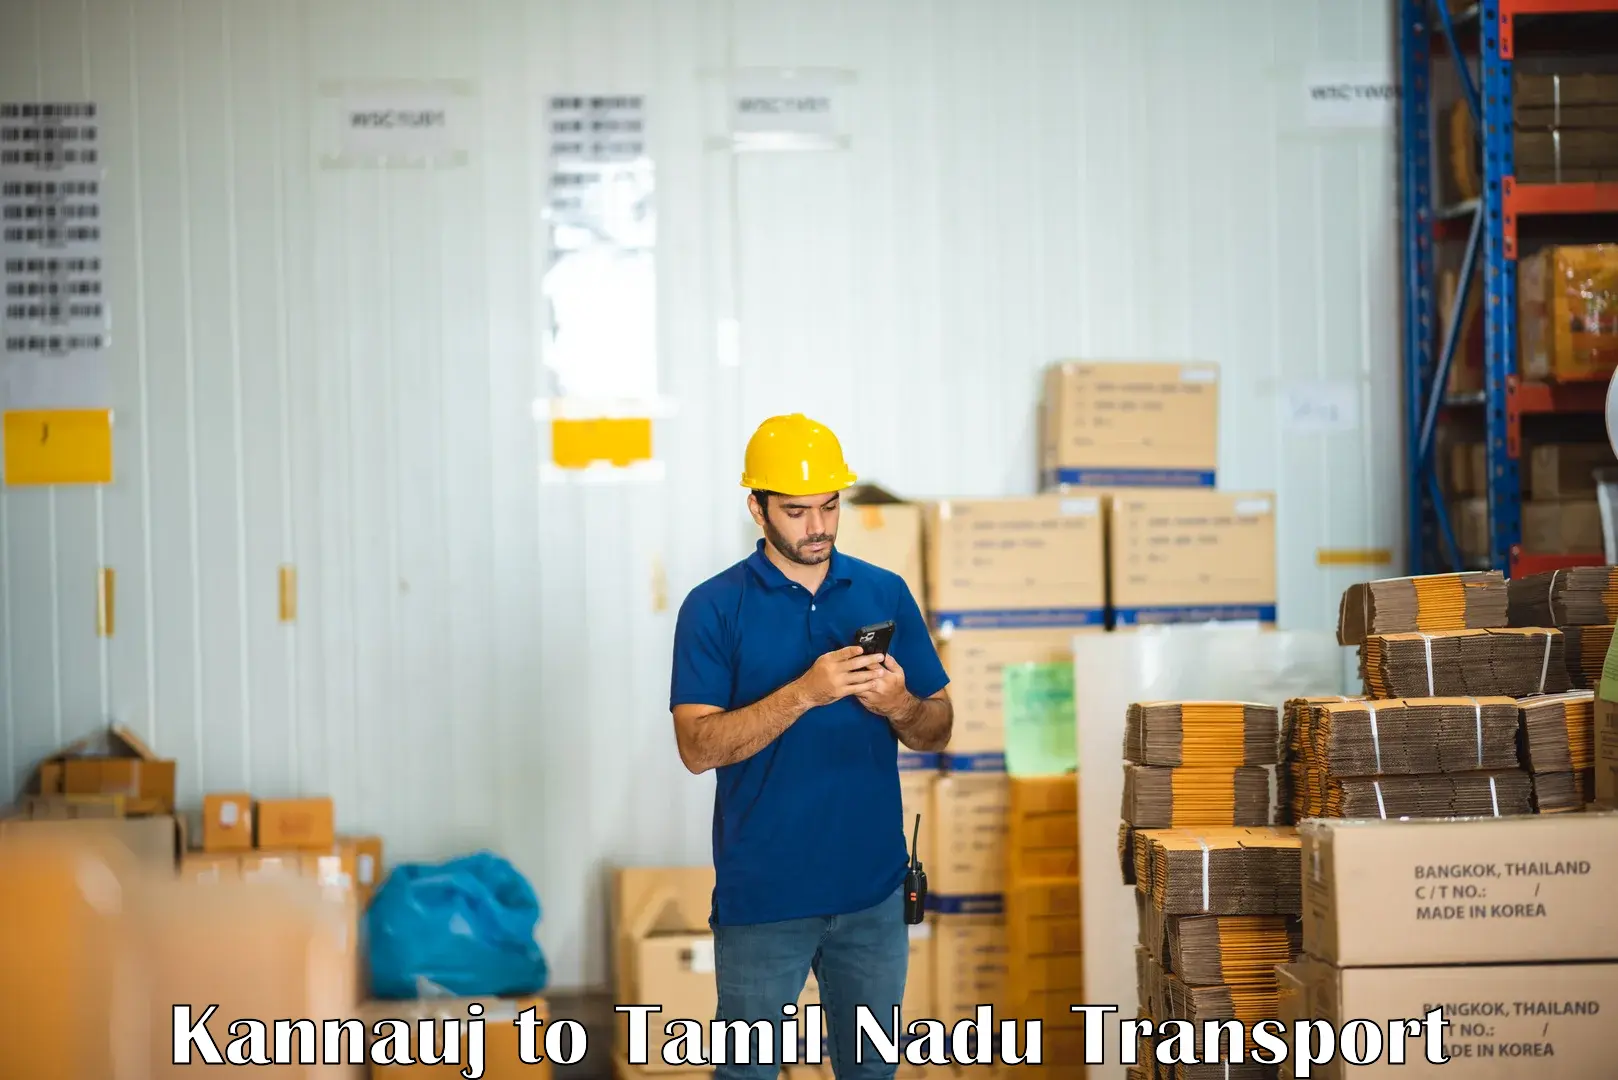 Daily parcel service transport Kannauj to Vedasandur